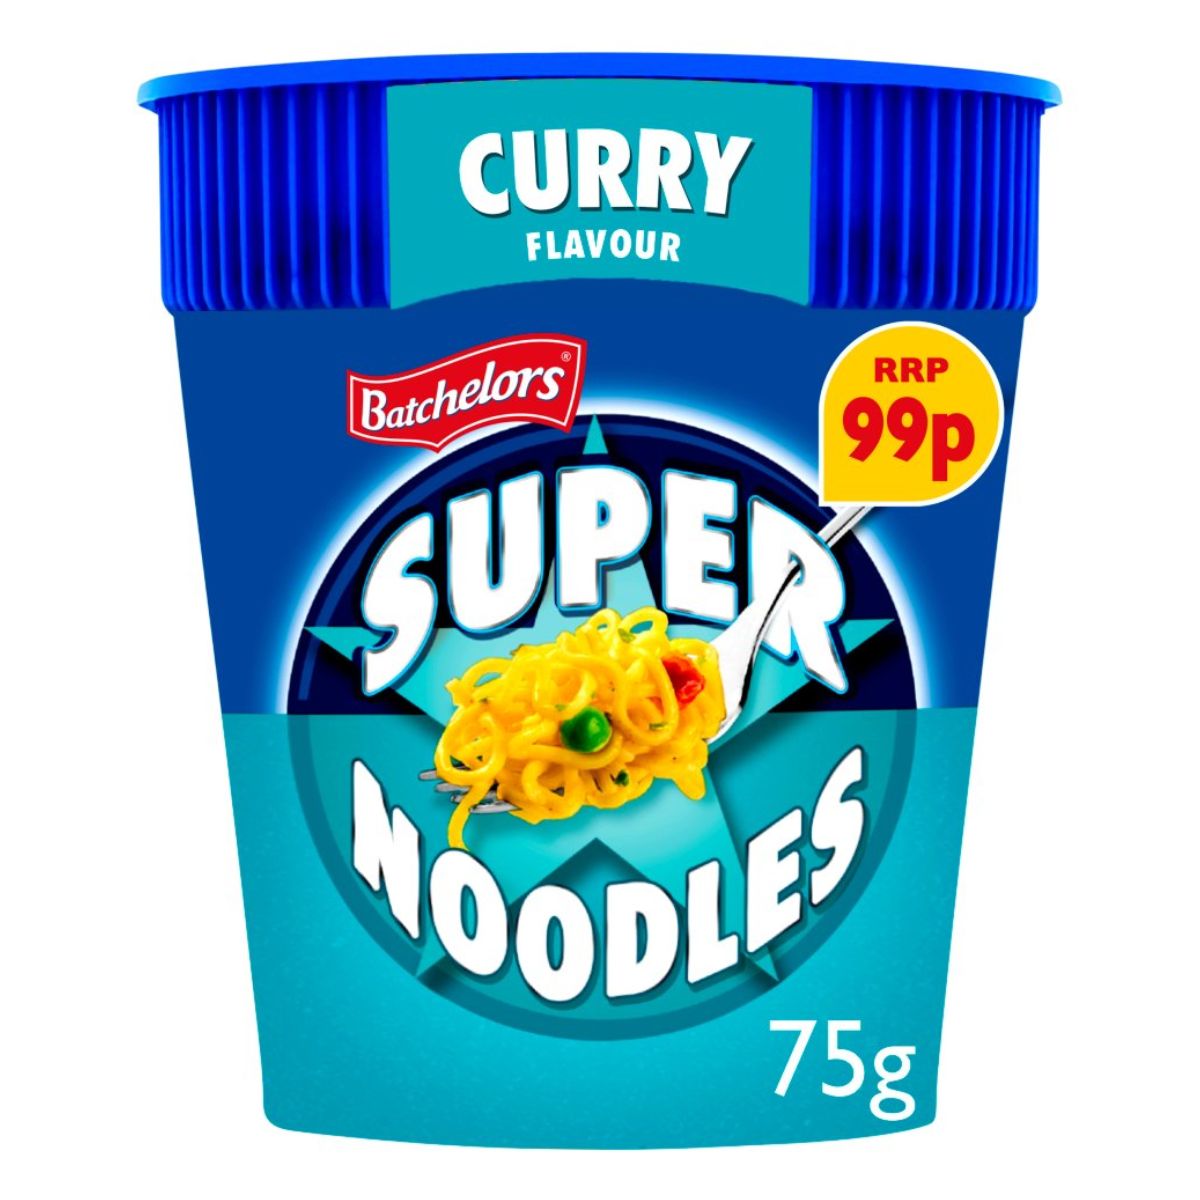 A cup of Batchelors - Super Noodles Curry Flavour - 75g.